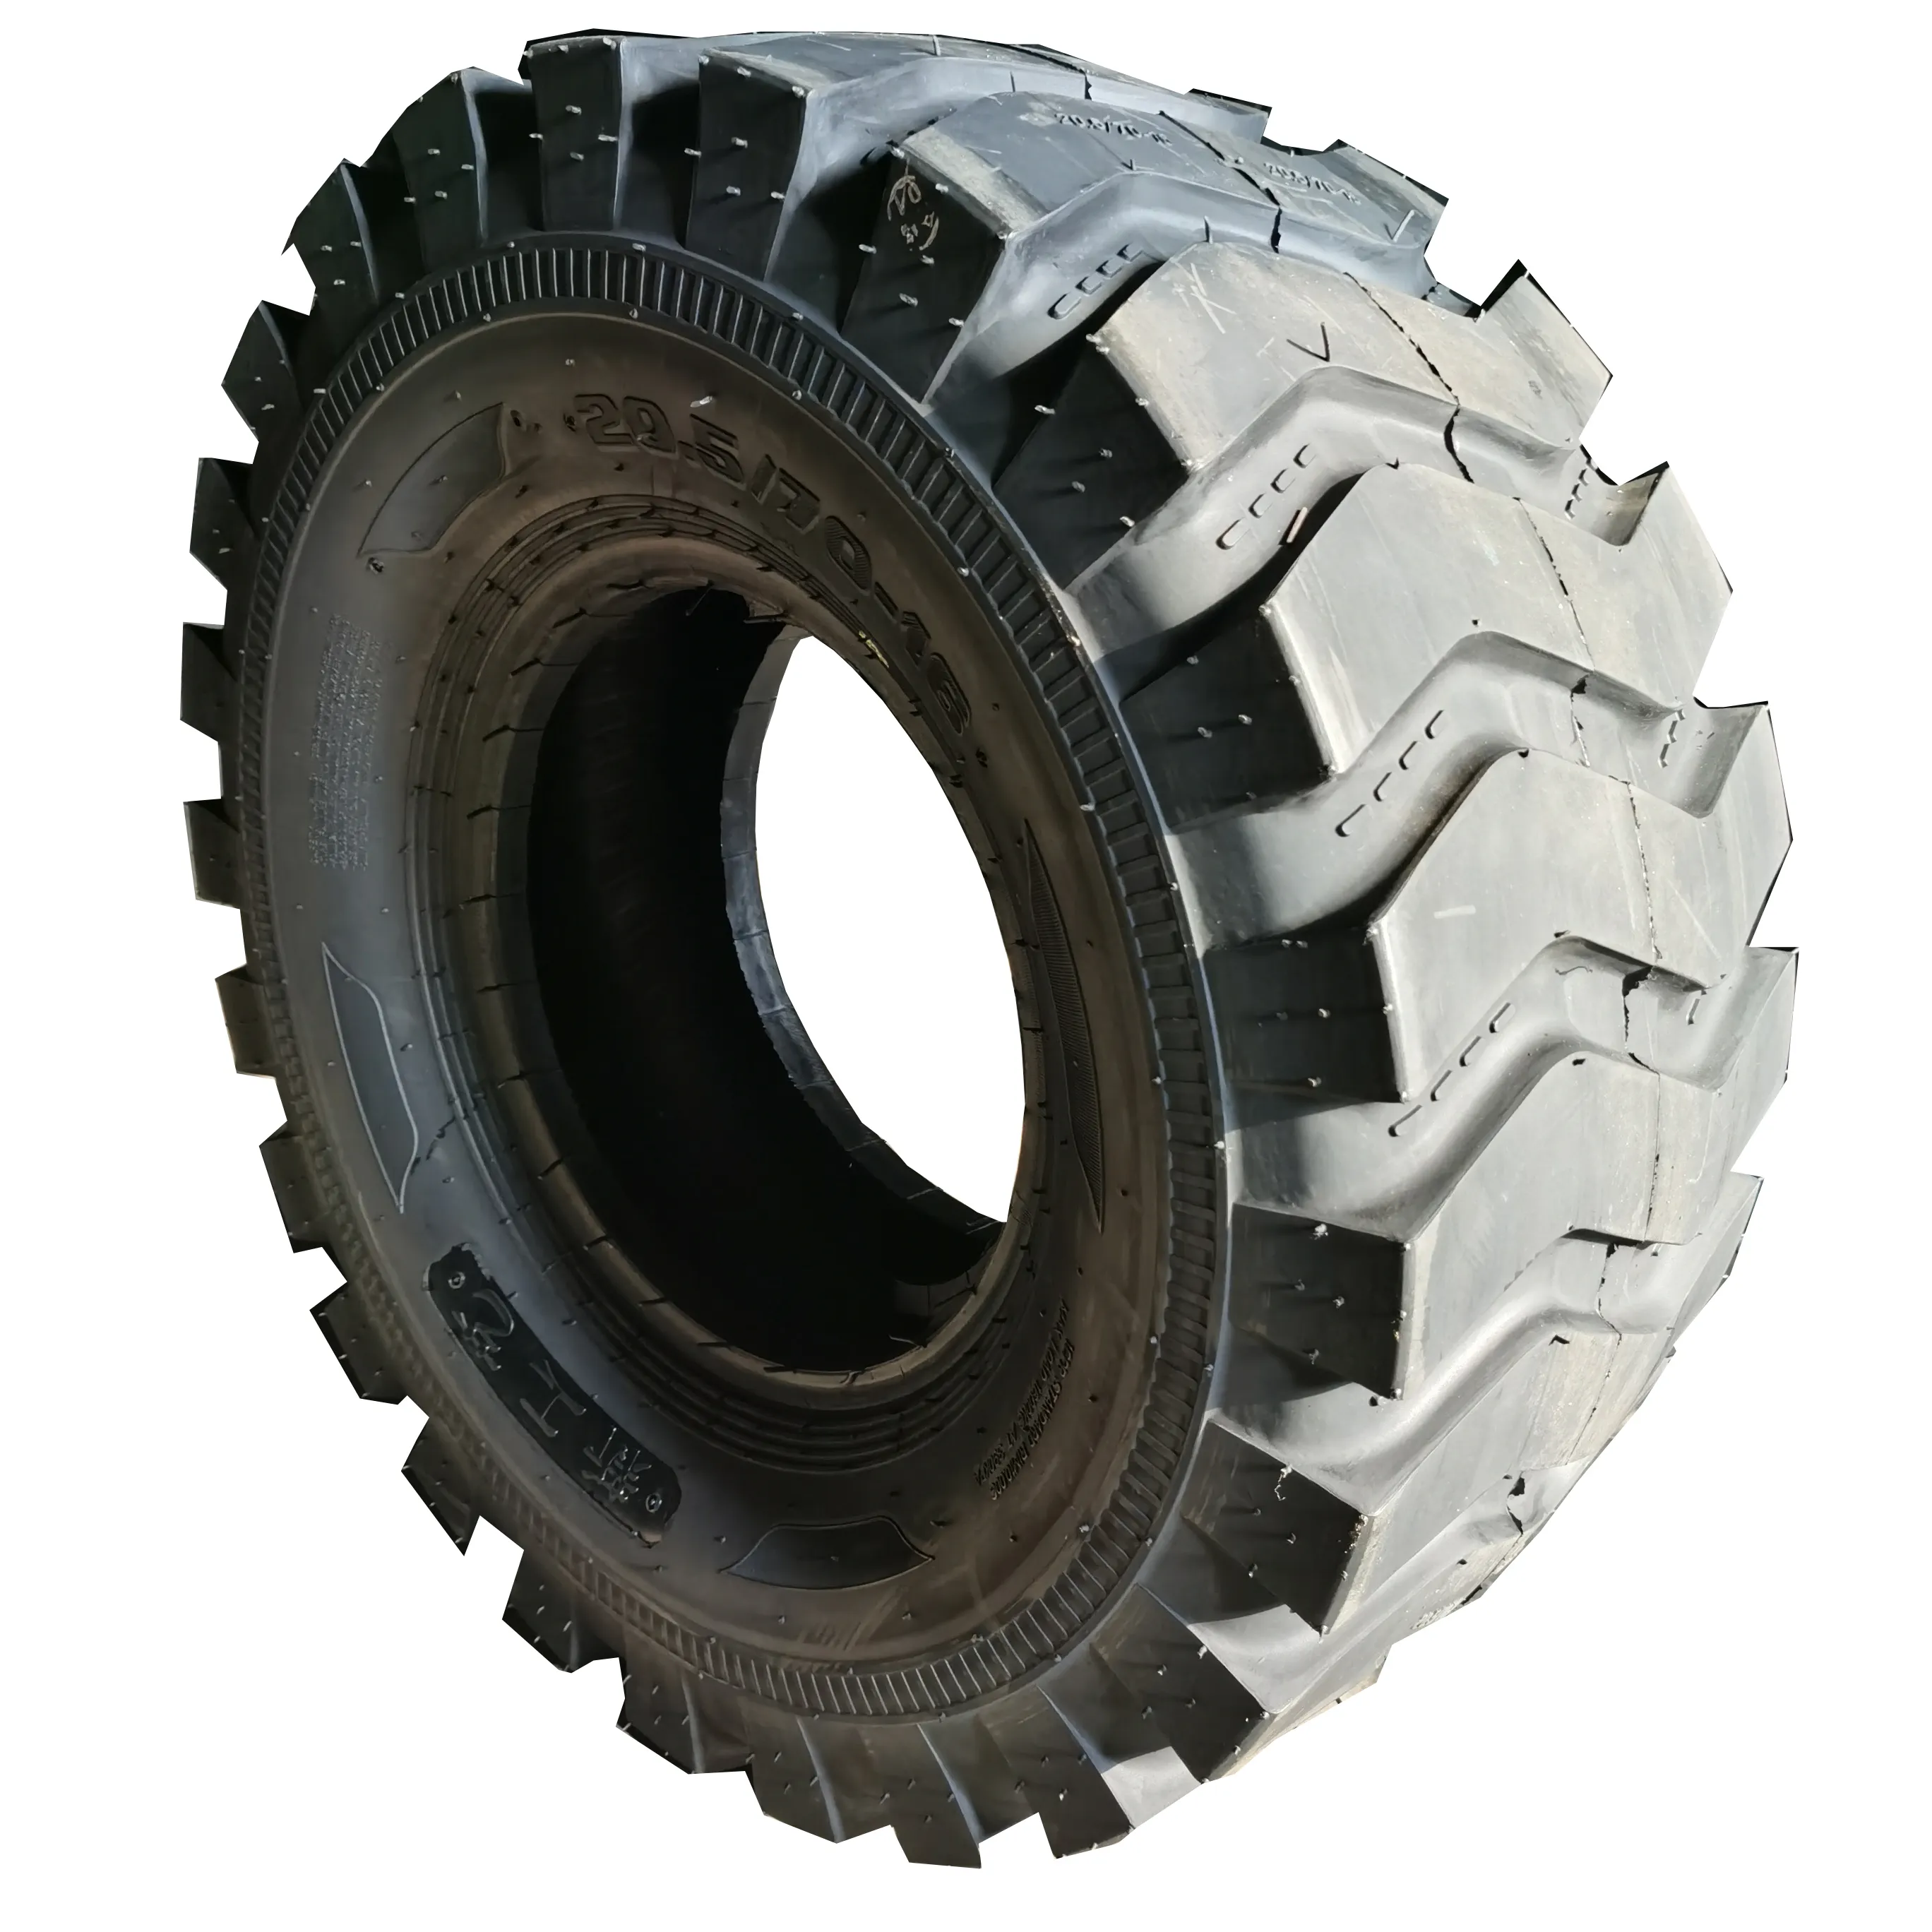 Vente en gros pneu hors route Pneus pour camion Greamark Pneu de camion 20.5/70-16 de haute qualité